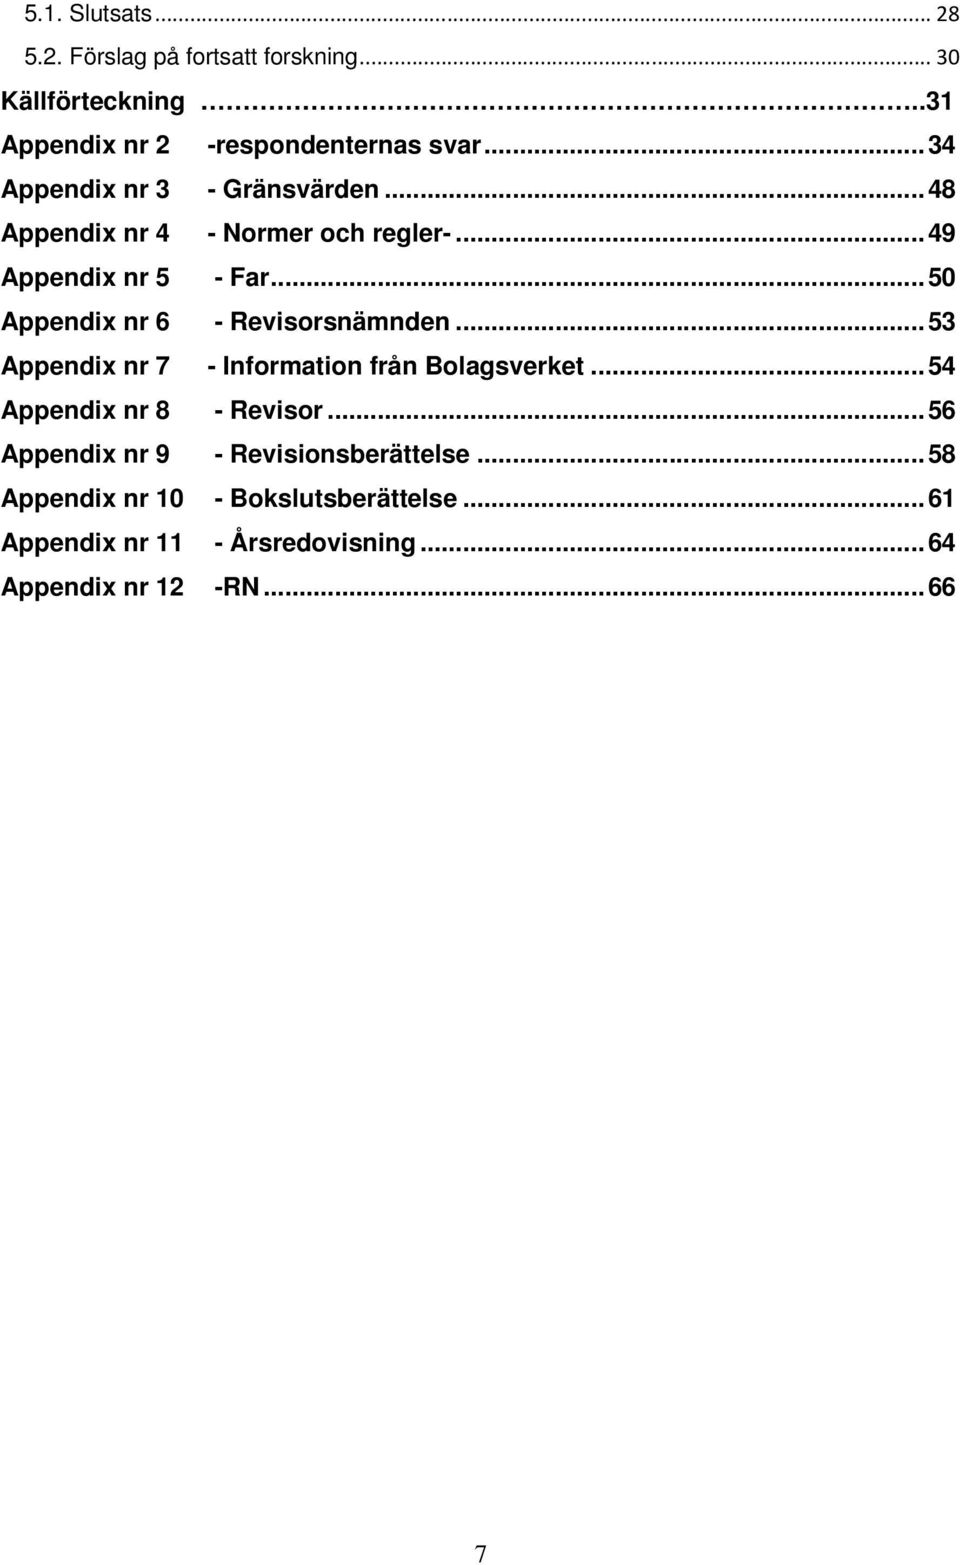 .. 50 Appendix nr 6 - Revisorsnämnden... 53 Appendix nr 7 - Information från Bolagsverket... 54 Appendix nr 8 - Revisor.